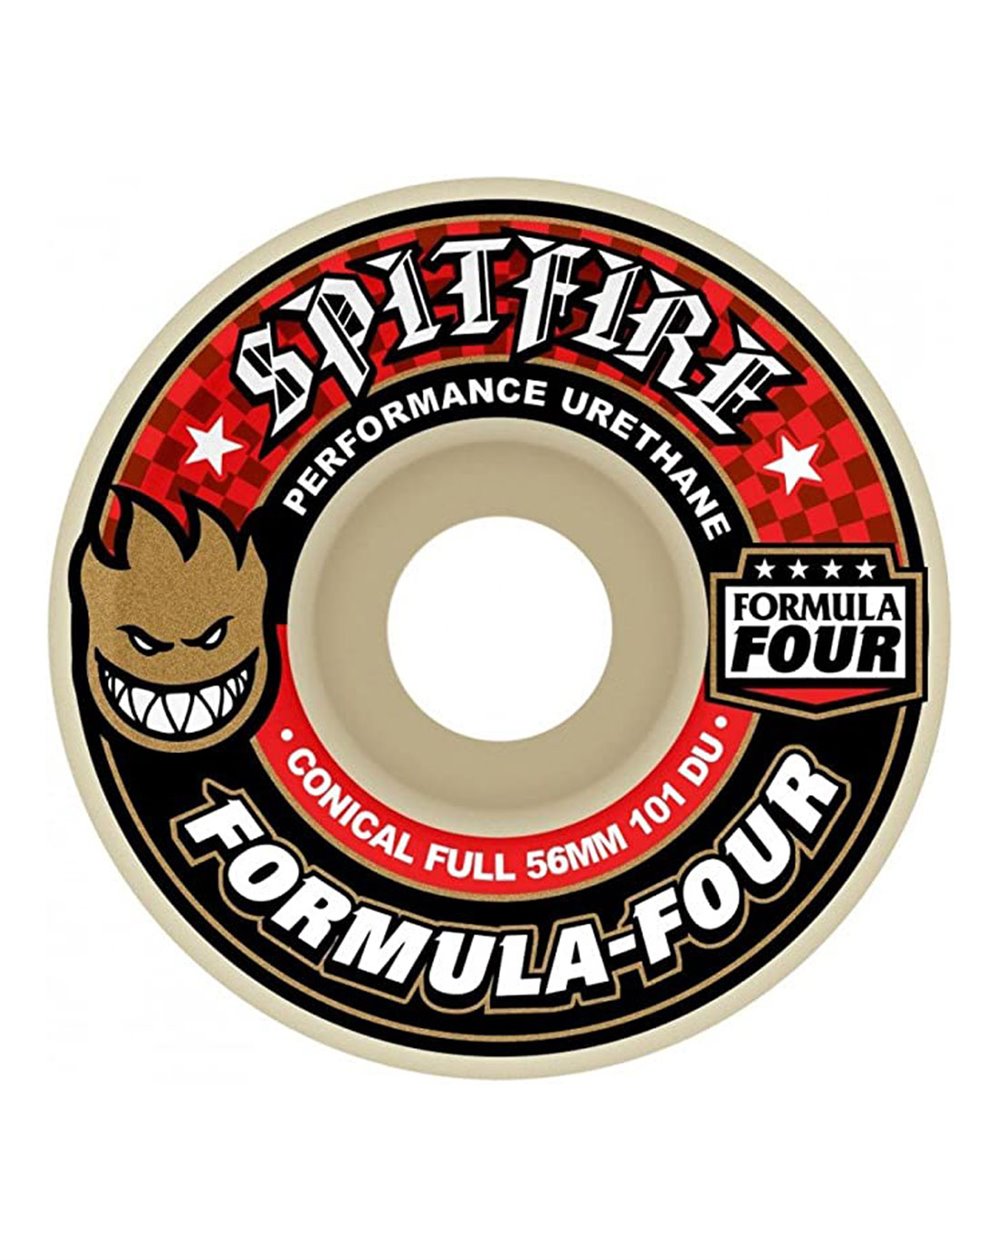 Spitfire Ruedas Skate Formula Four Conical Full 56mm 101A 4 piezas